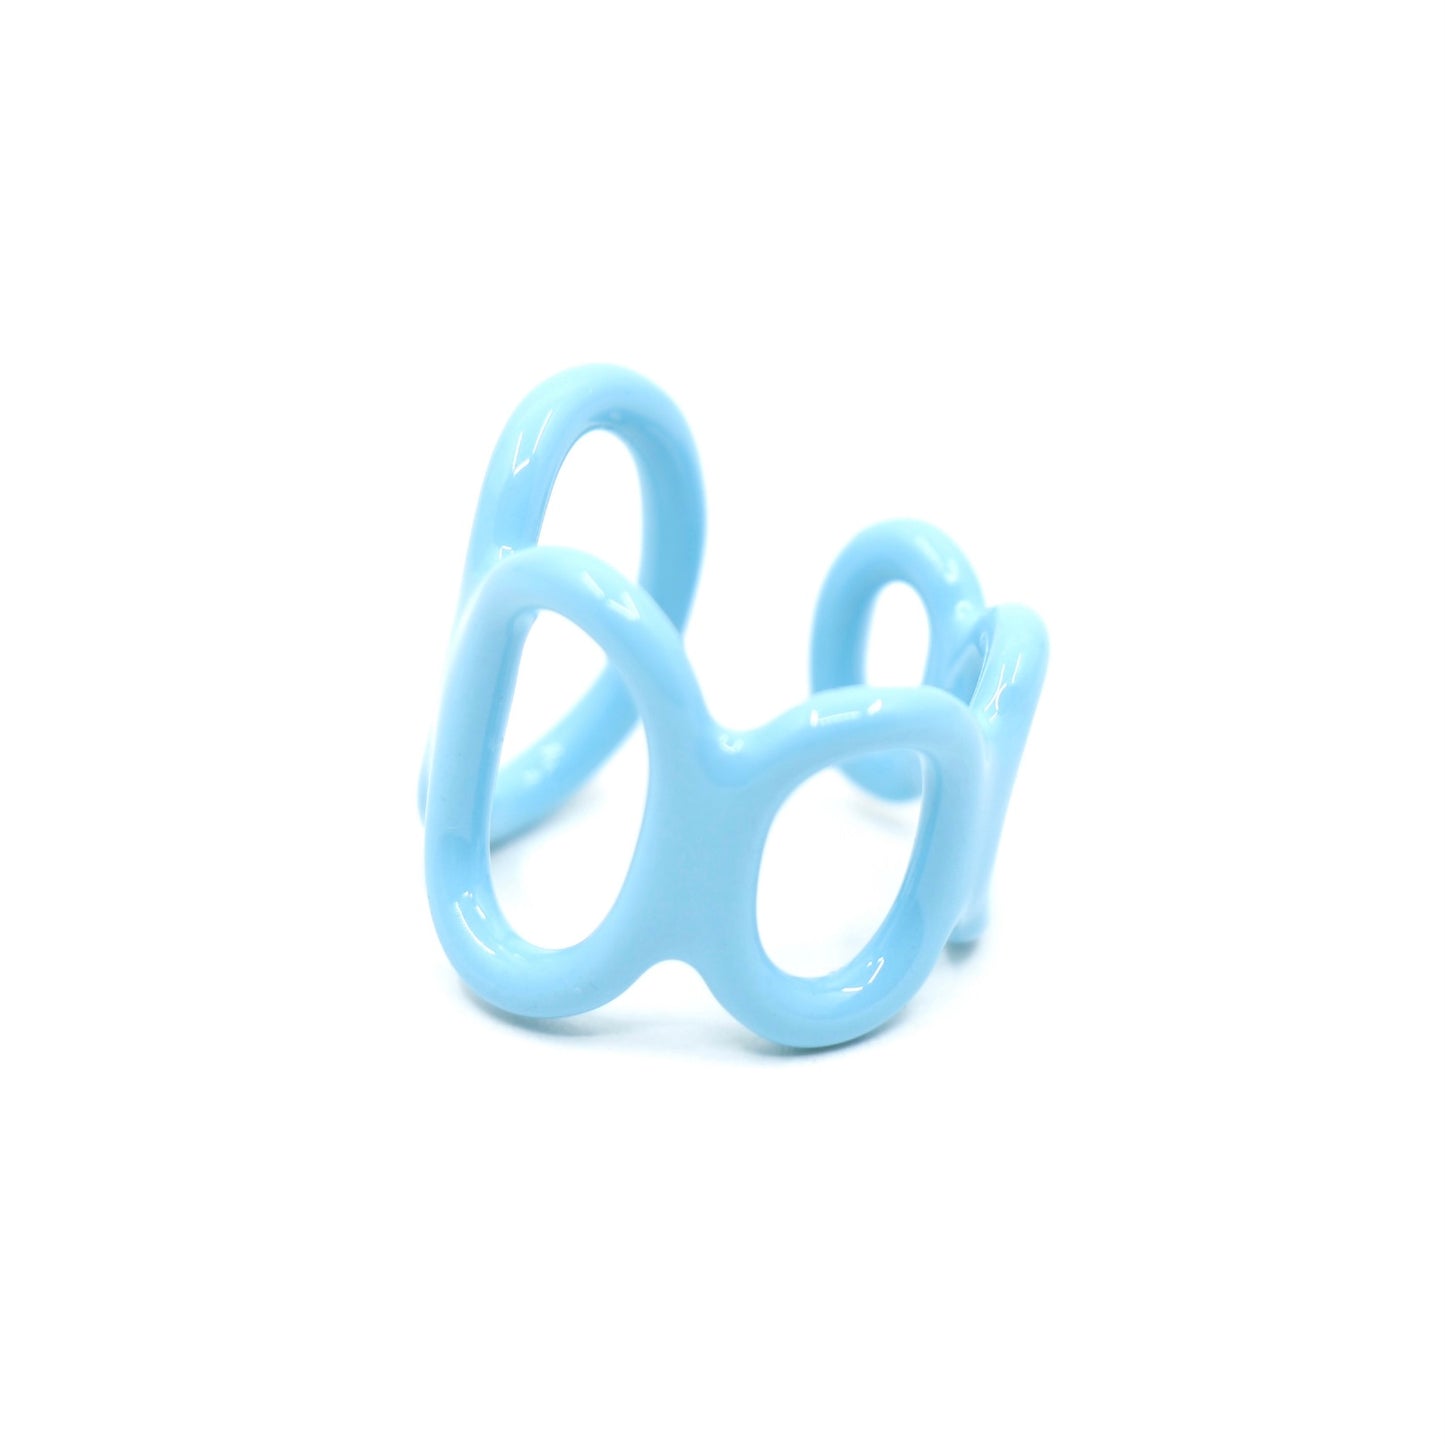 Loop Ring, Powder Blue